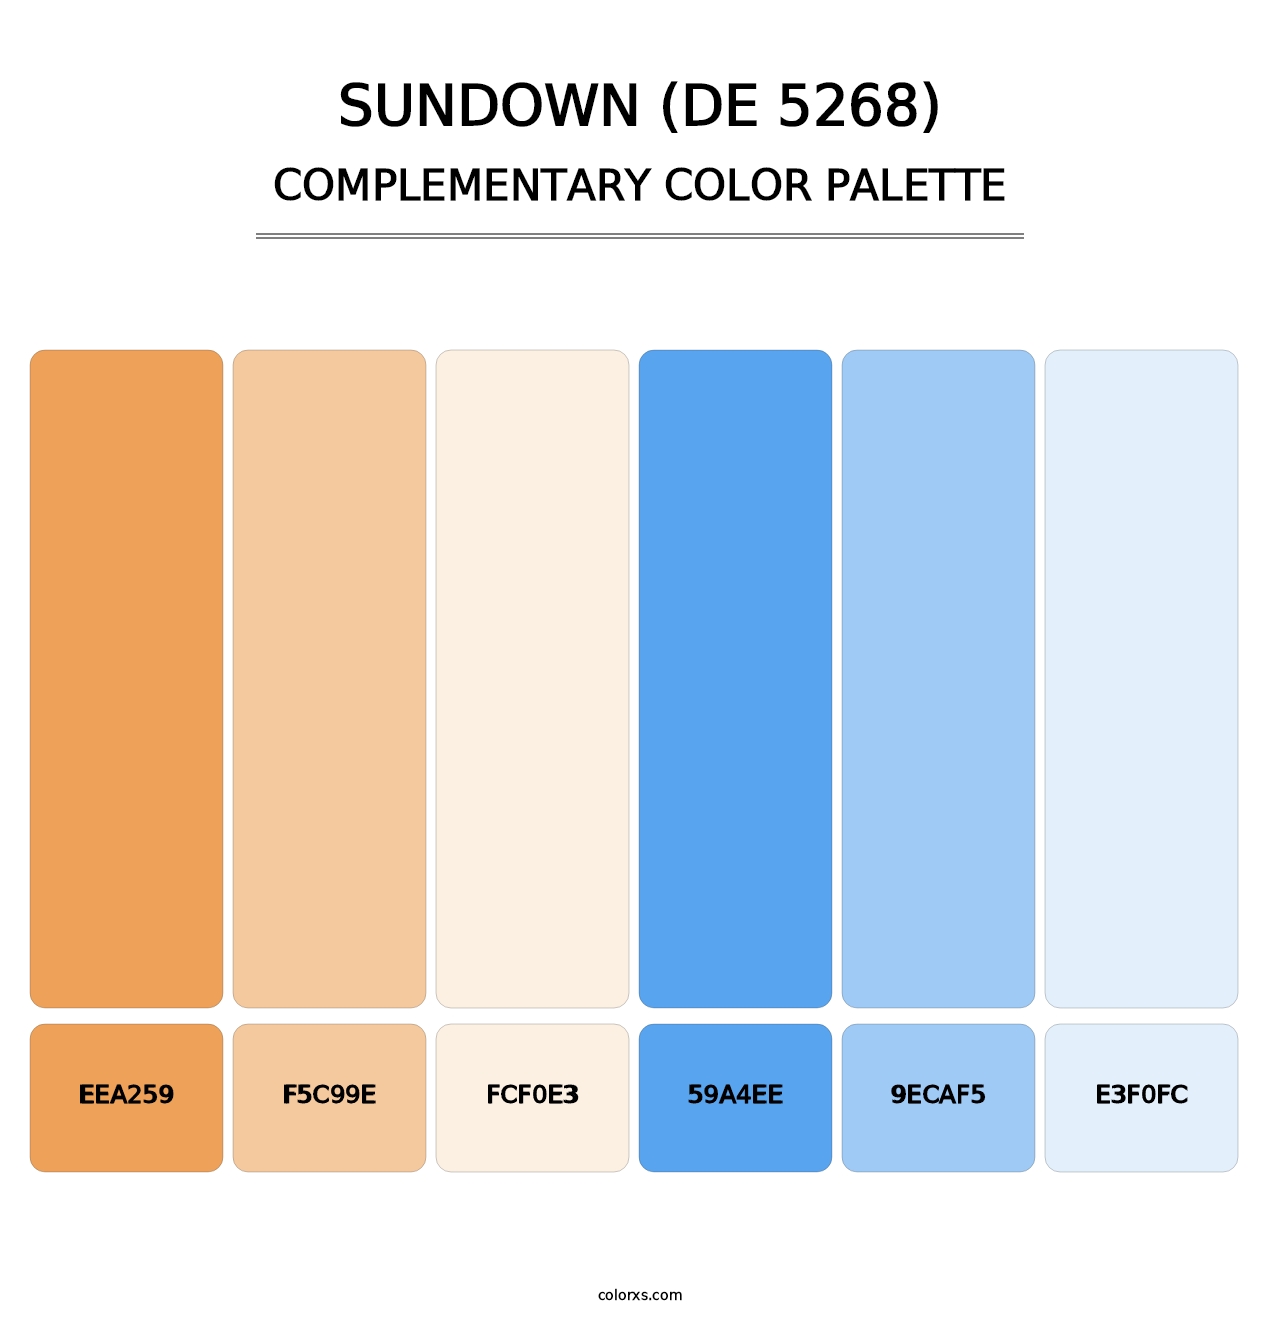 Sundown (DE 5268) - Complementary Color Palette